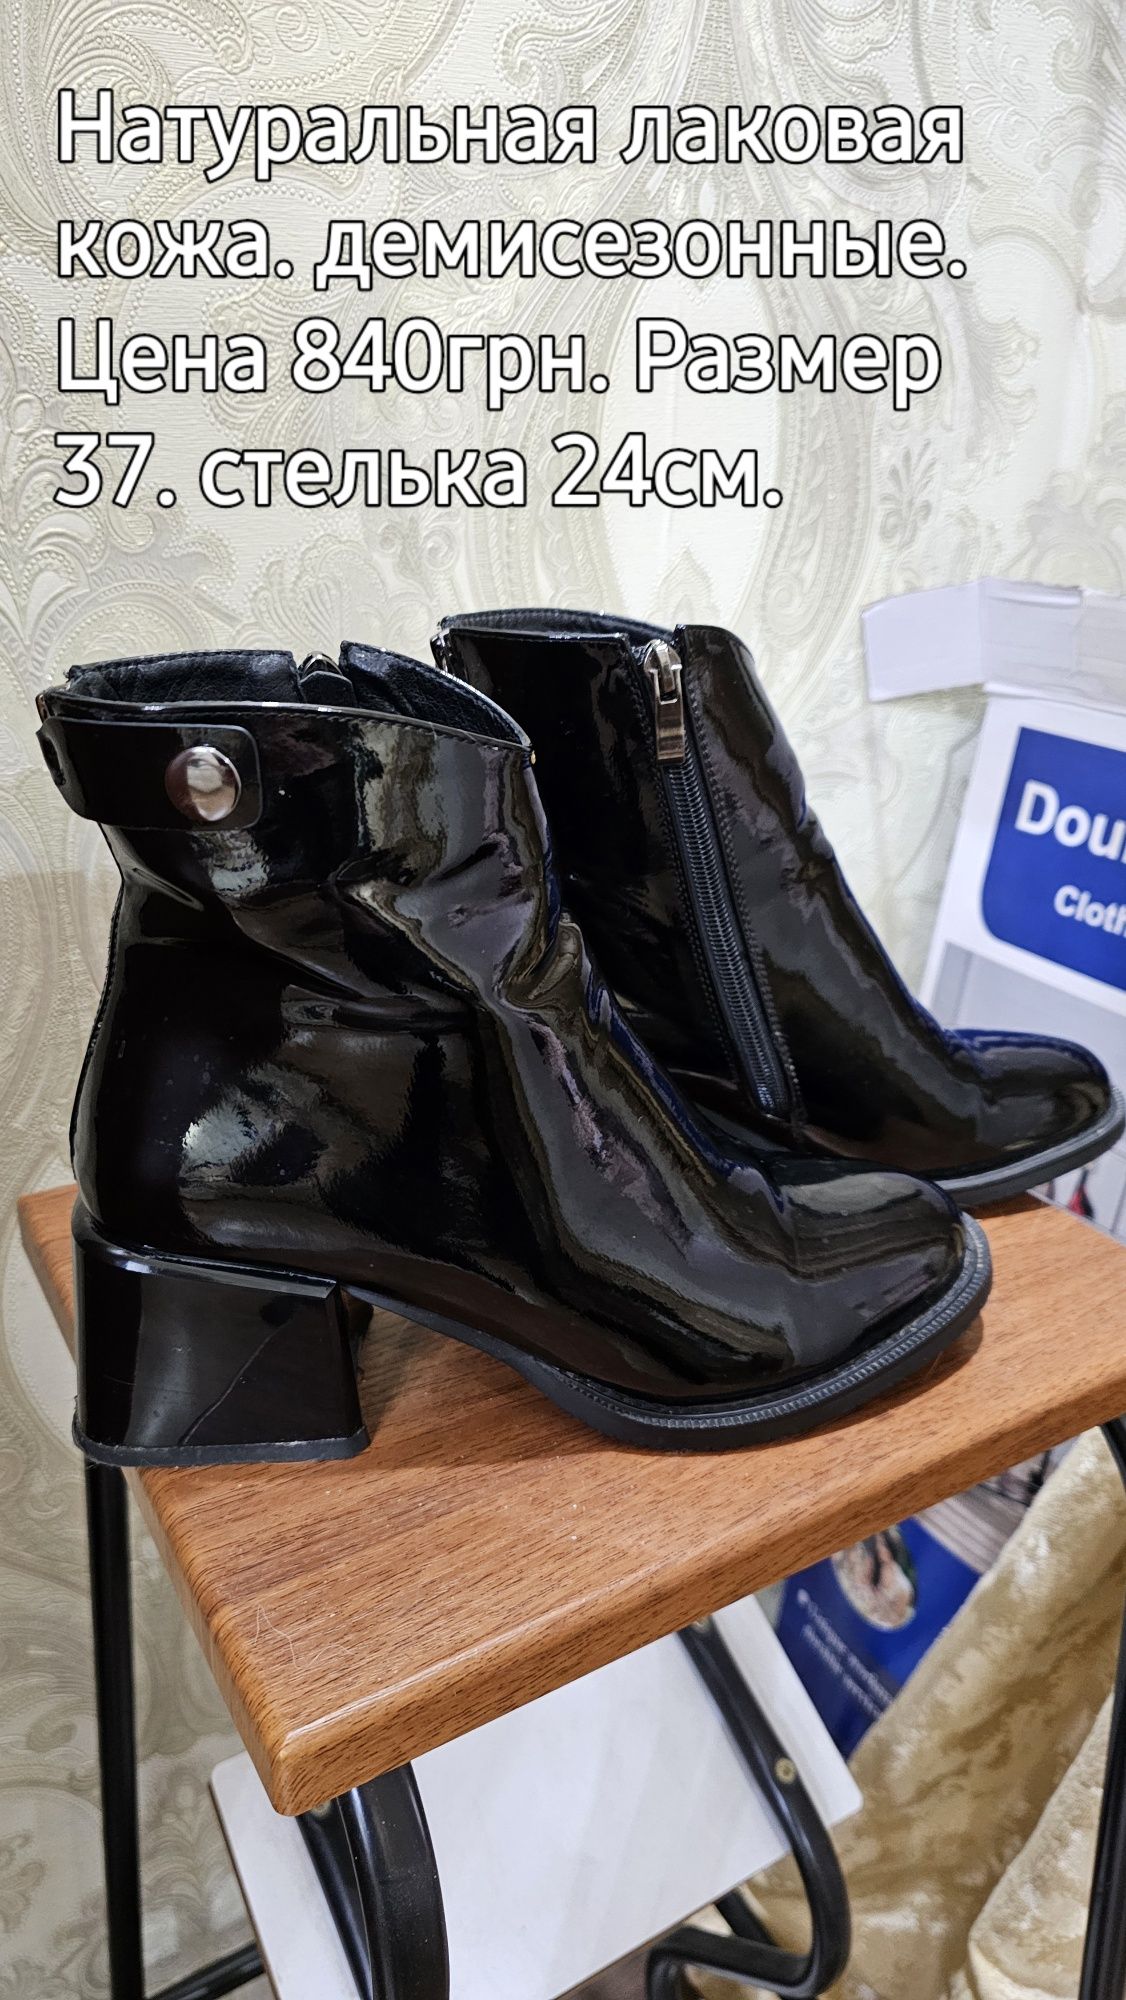 Распродажа обуви б/у по низким ценам!!!